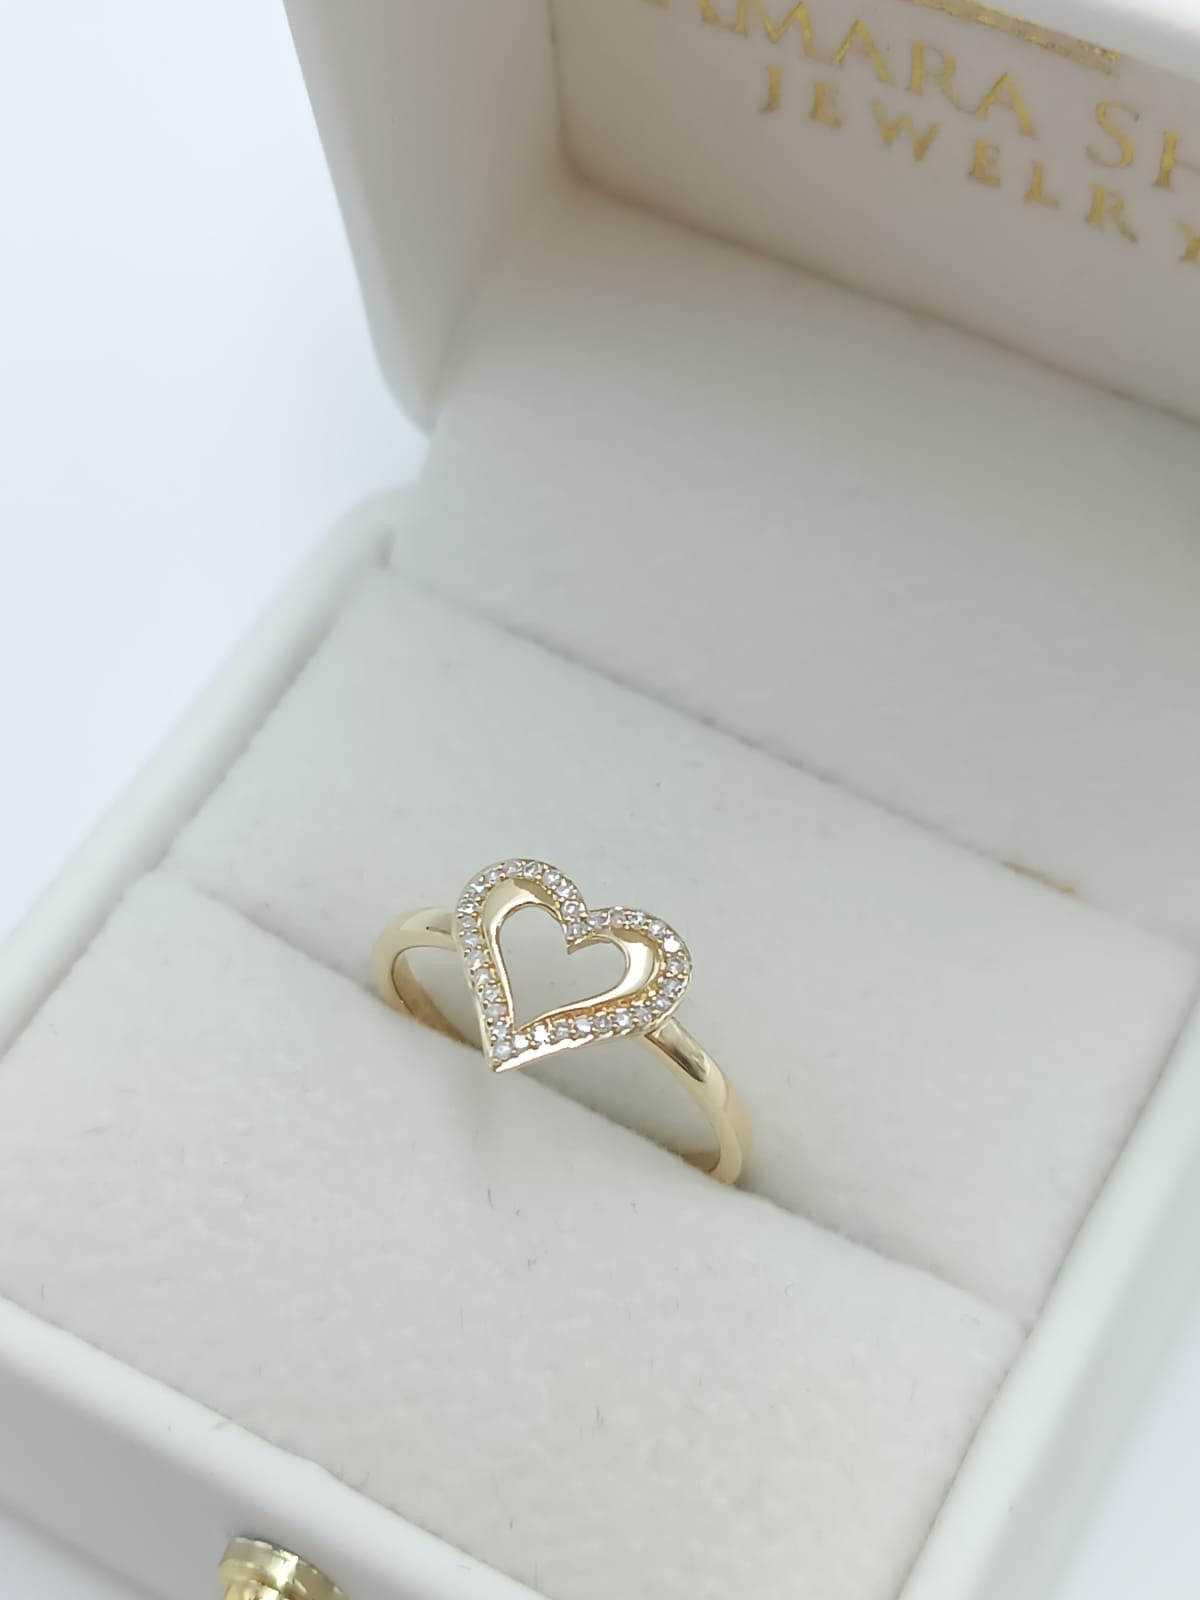 Jenela's Love Ring